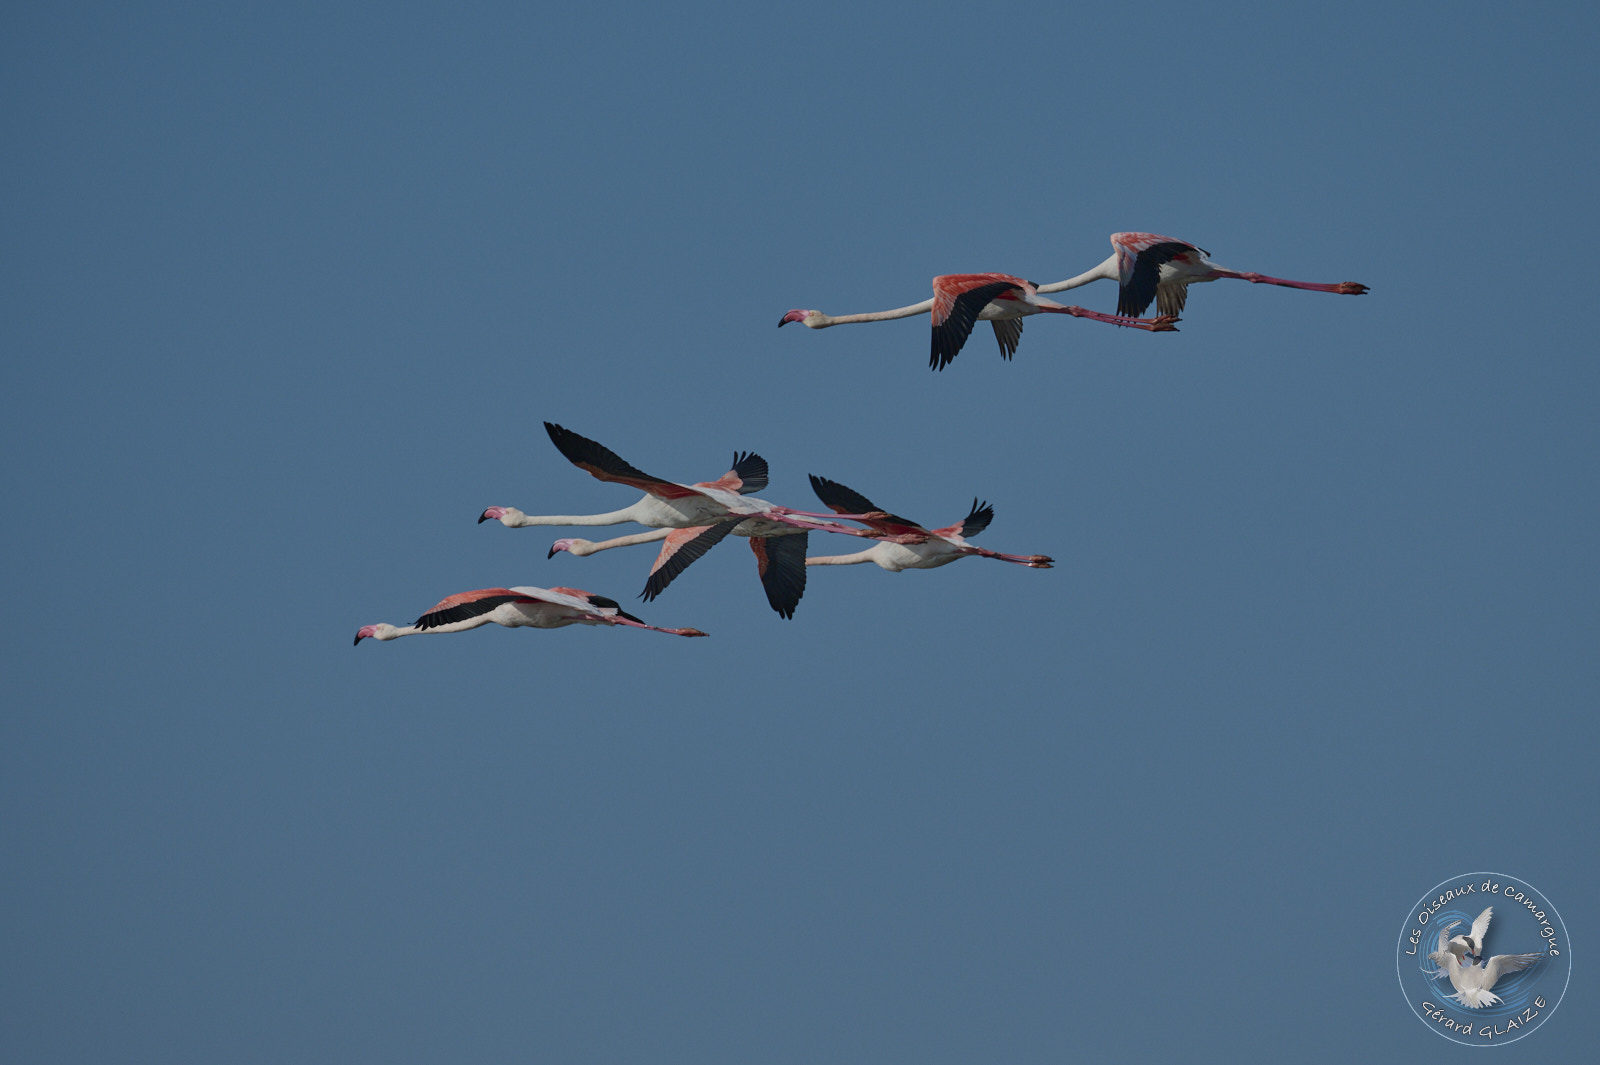 Vol de Flamants roses - Flight of Greater Flamingos